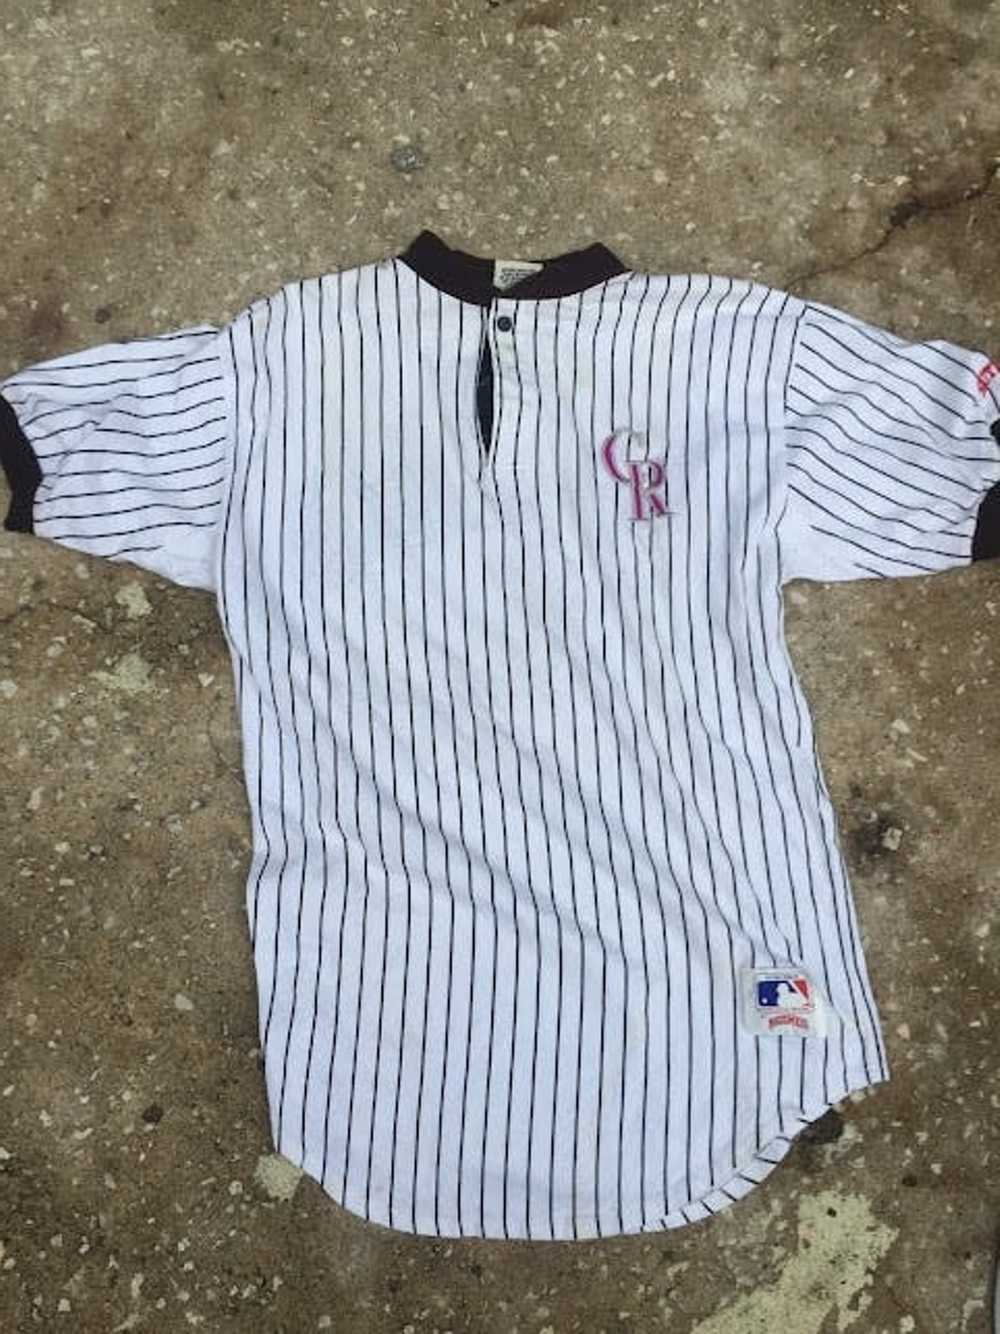 MLB vintage Colorado Rockies jersey - image 1